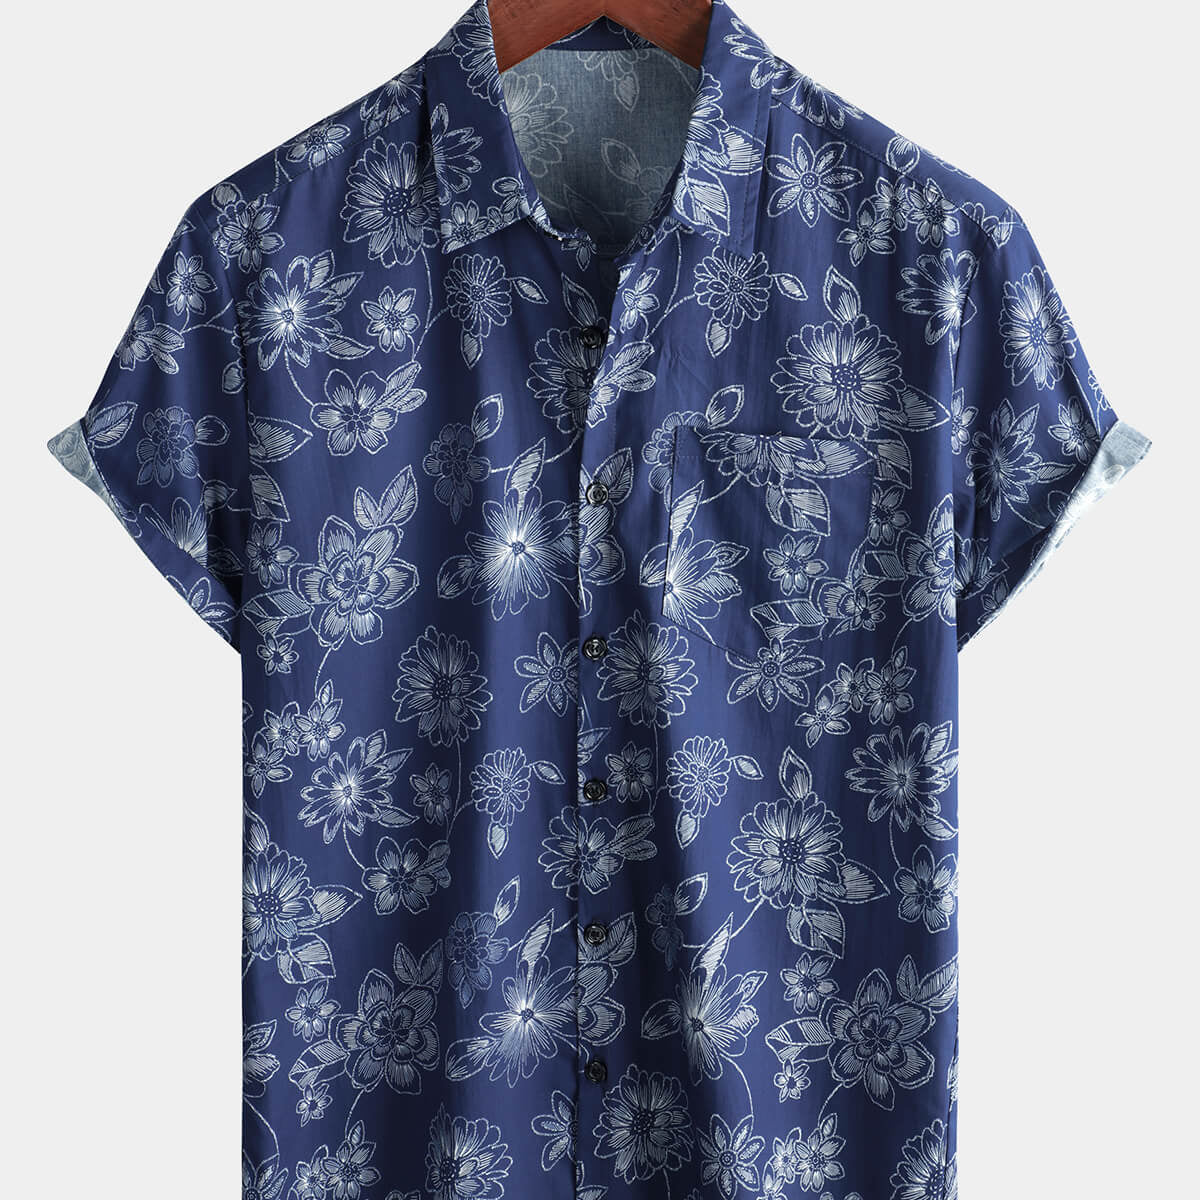 Men's Navy Blue Floral Hawaiian Beach Cotton Short Sleeve Shirt